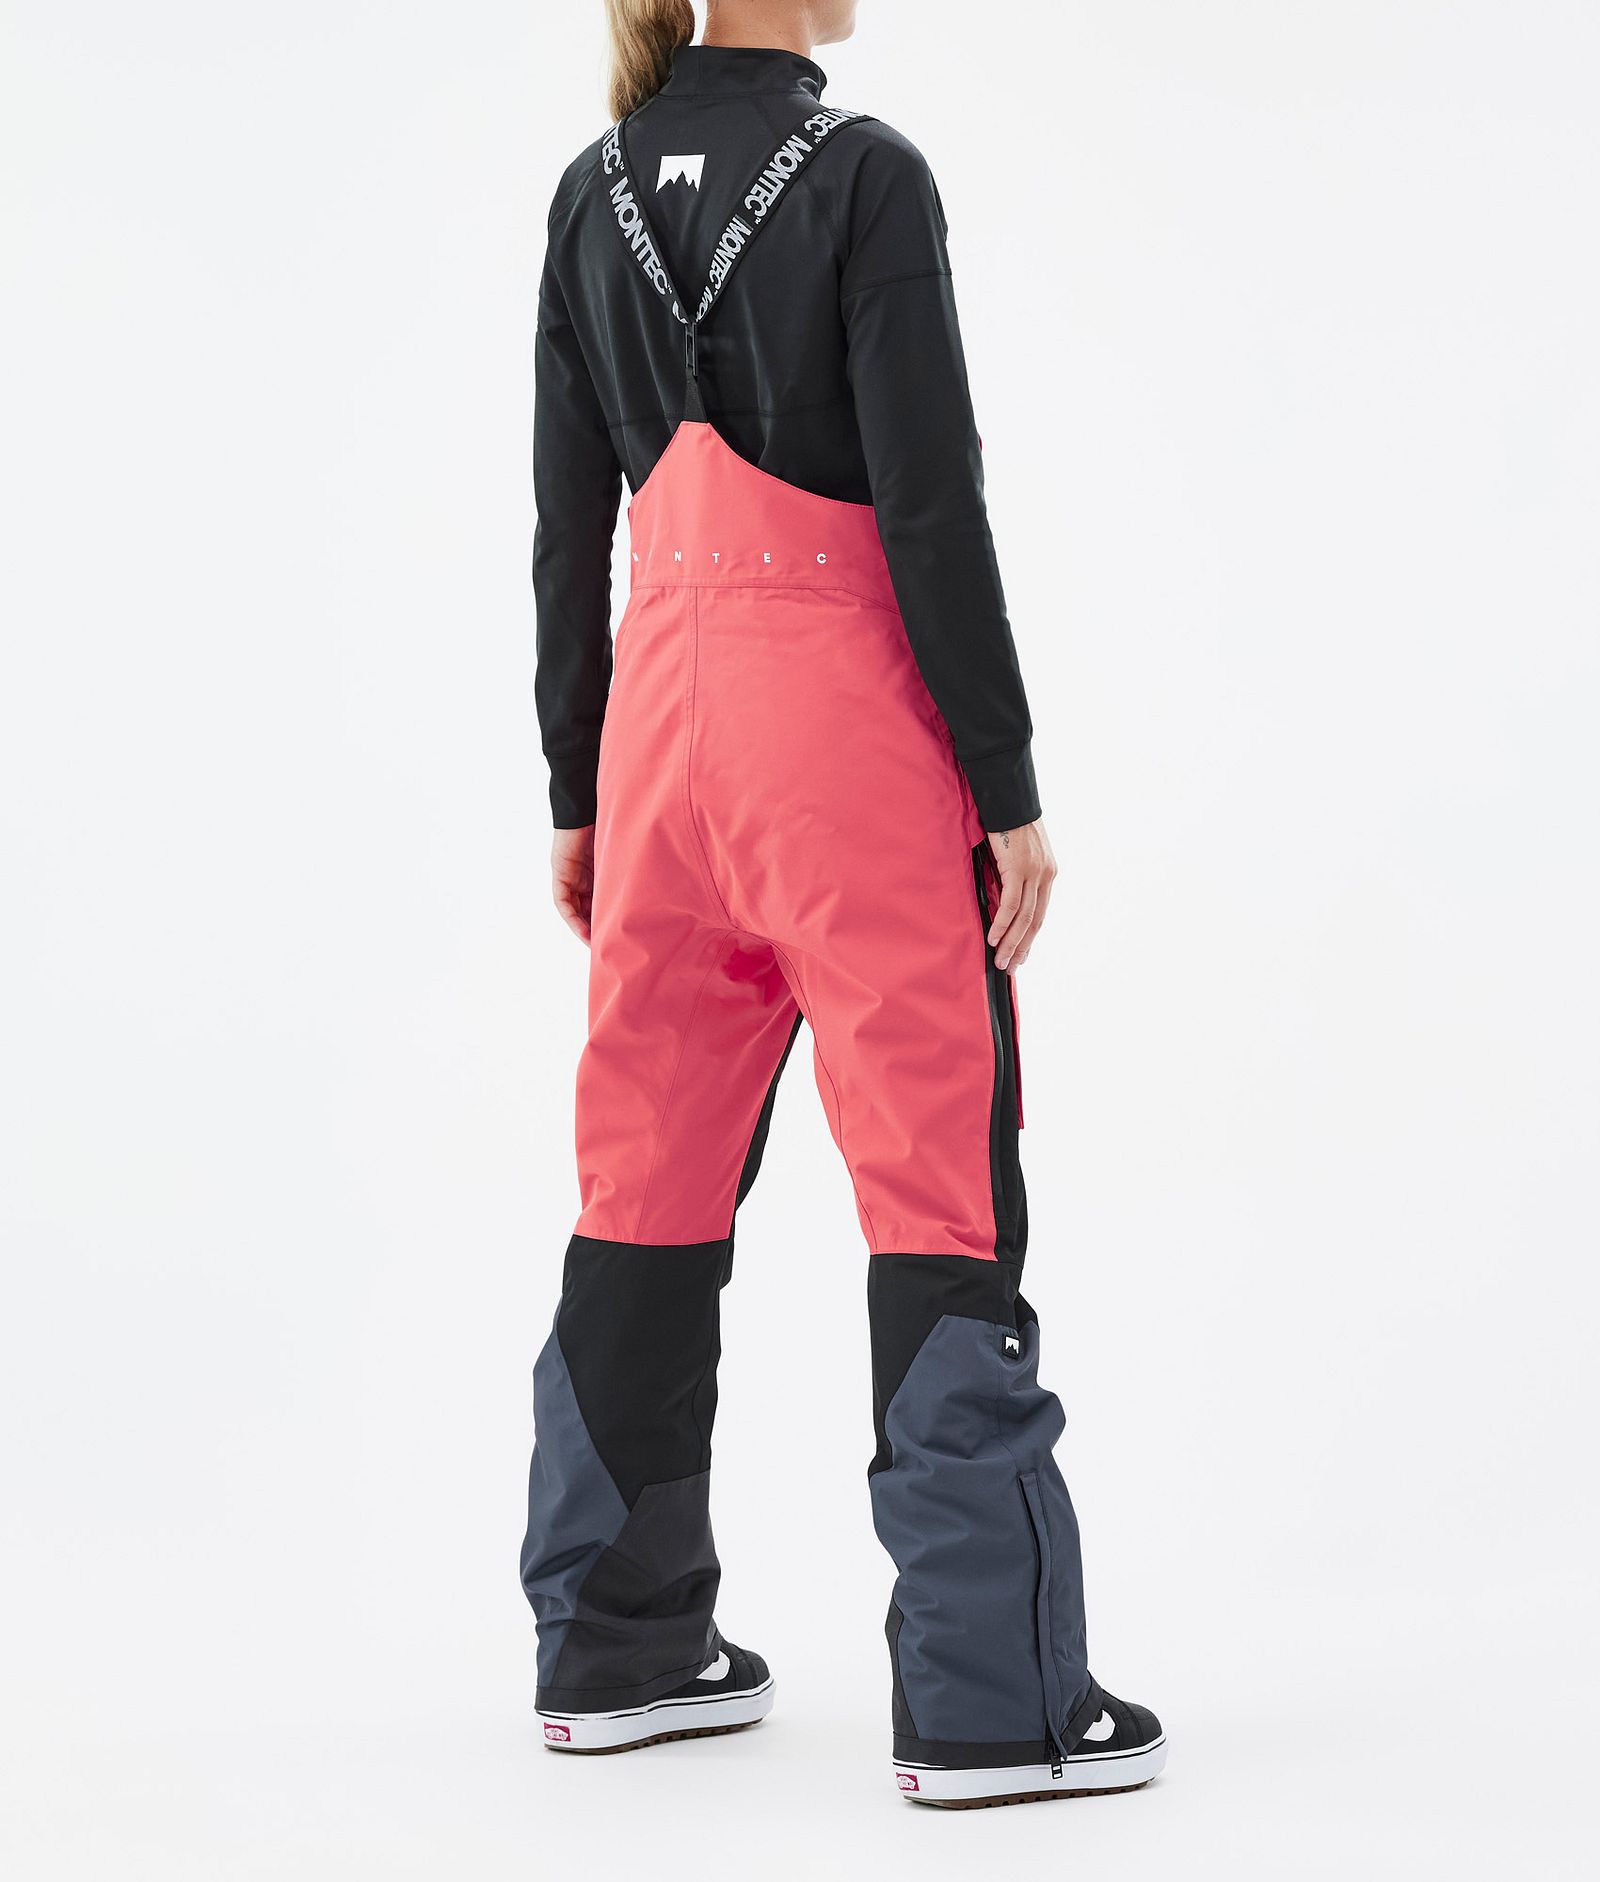 Fawk W Spodnie Snowboardowe Kobiety Coral/Black/Metal Blue